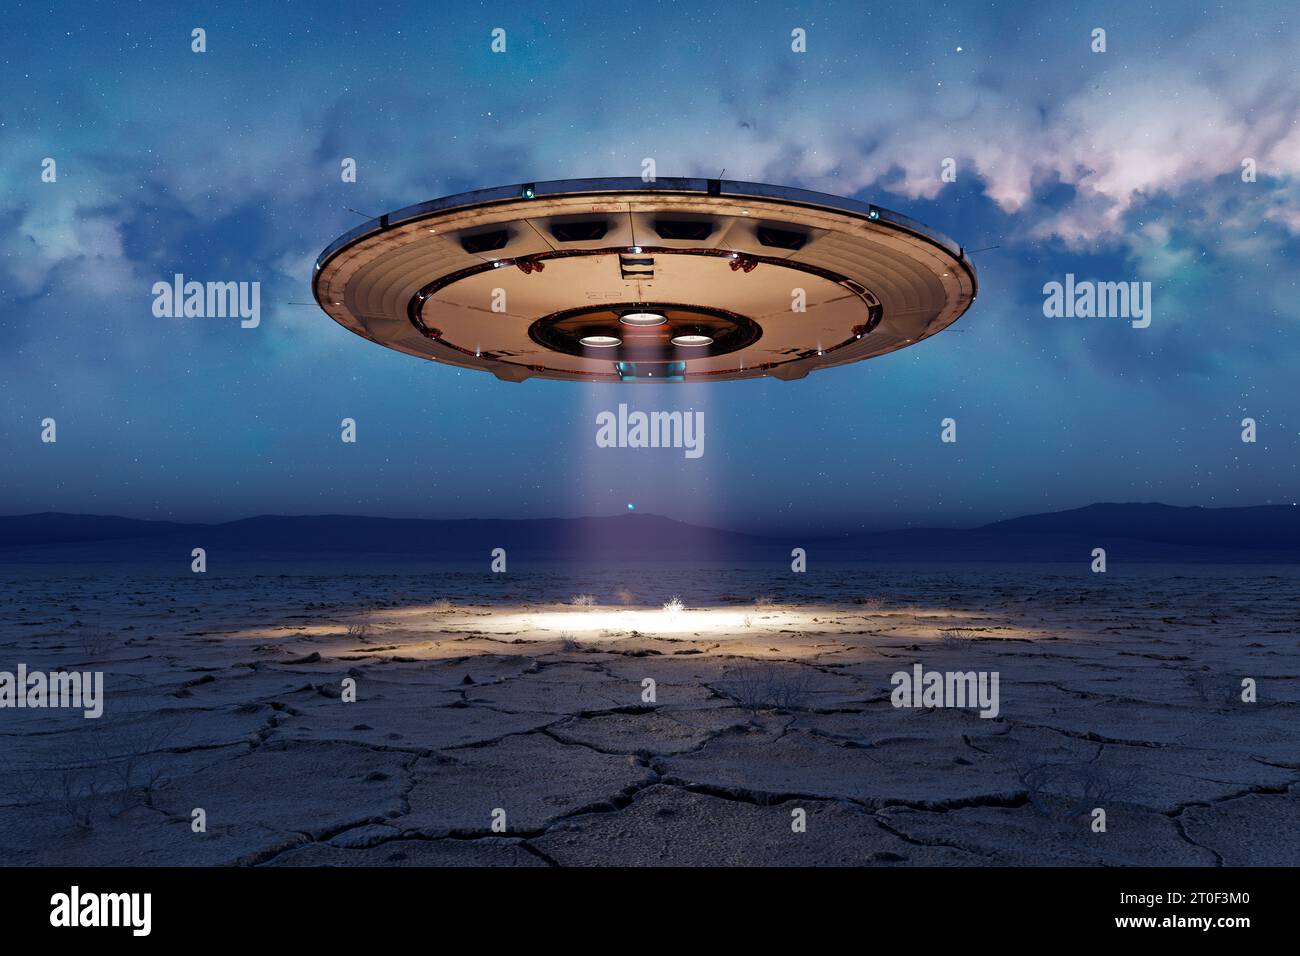 Alien Invasion Kreisförmige Silhouette der glänzenden Metalluntertasse über der leeren Wüste bei Nacht. UFO, UAP, hängt über dem Boden und schießt eine Brigde ab Stockfoto